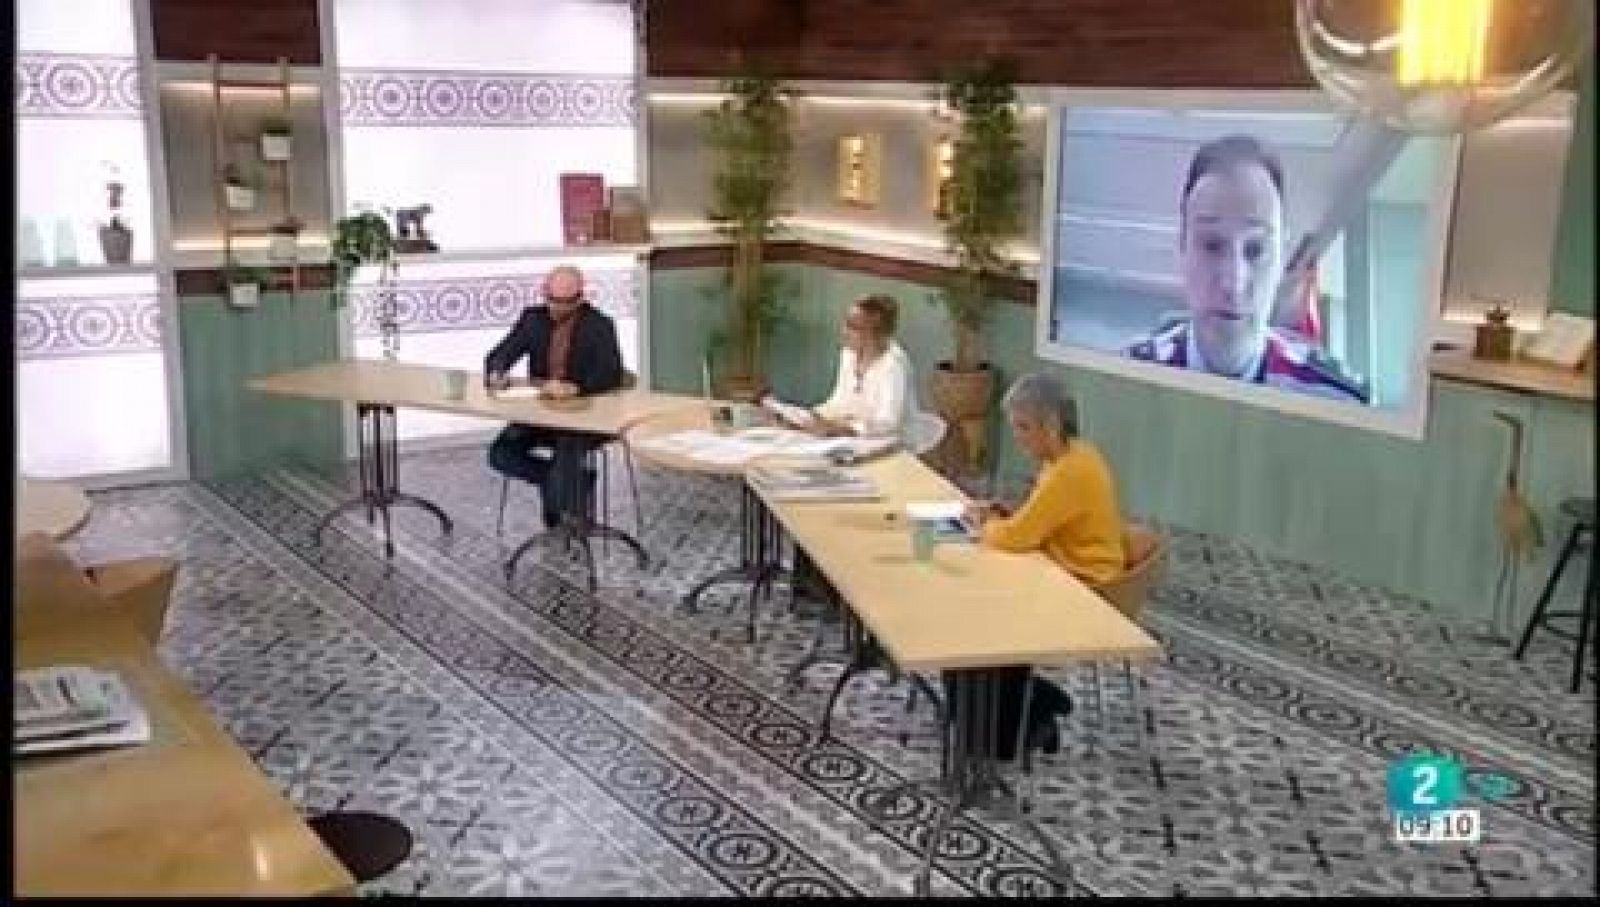 Sergi Sabrià, Edudard Sallent i vacuna contra la Covid19 | Cafè d'idees - RTVE Catalunya